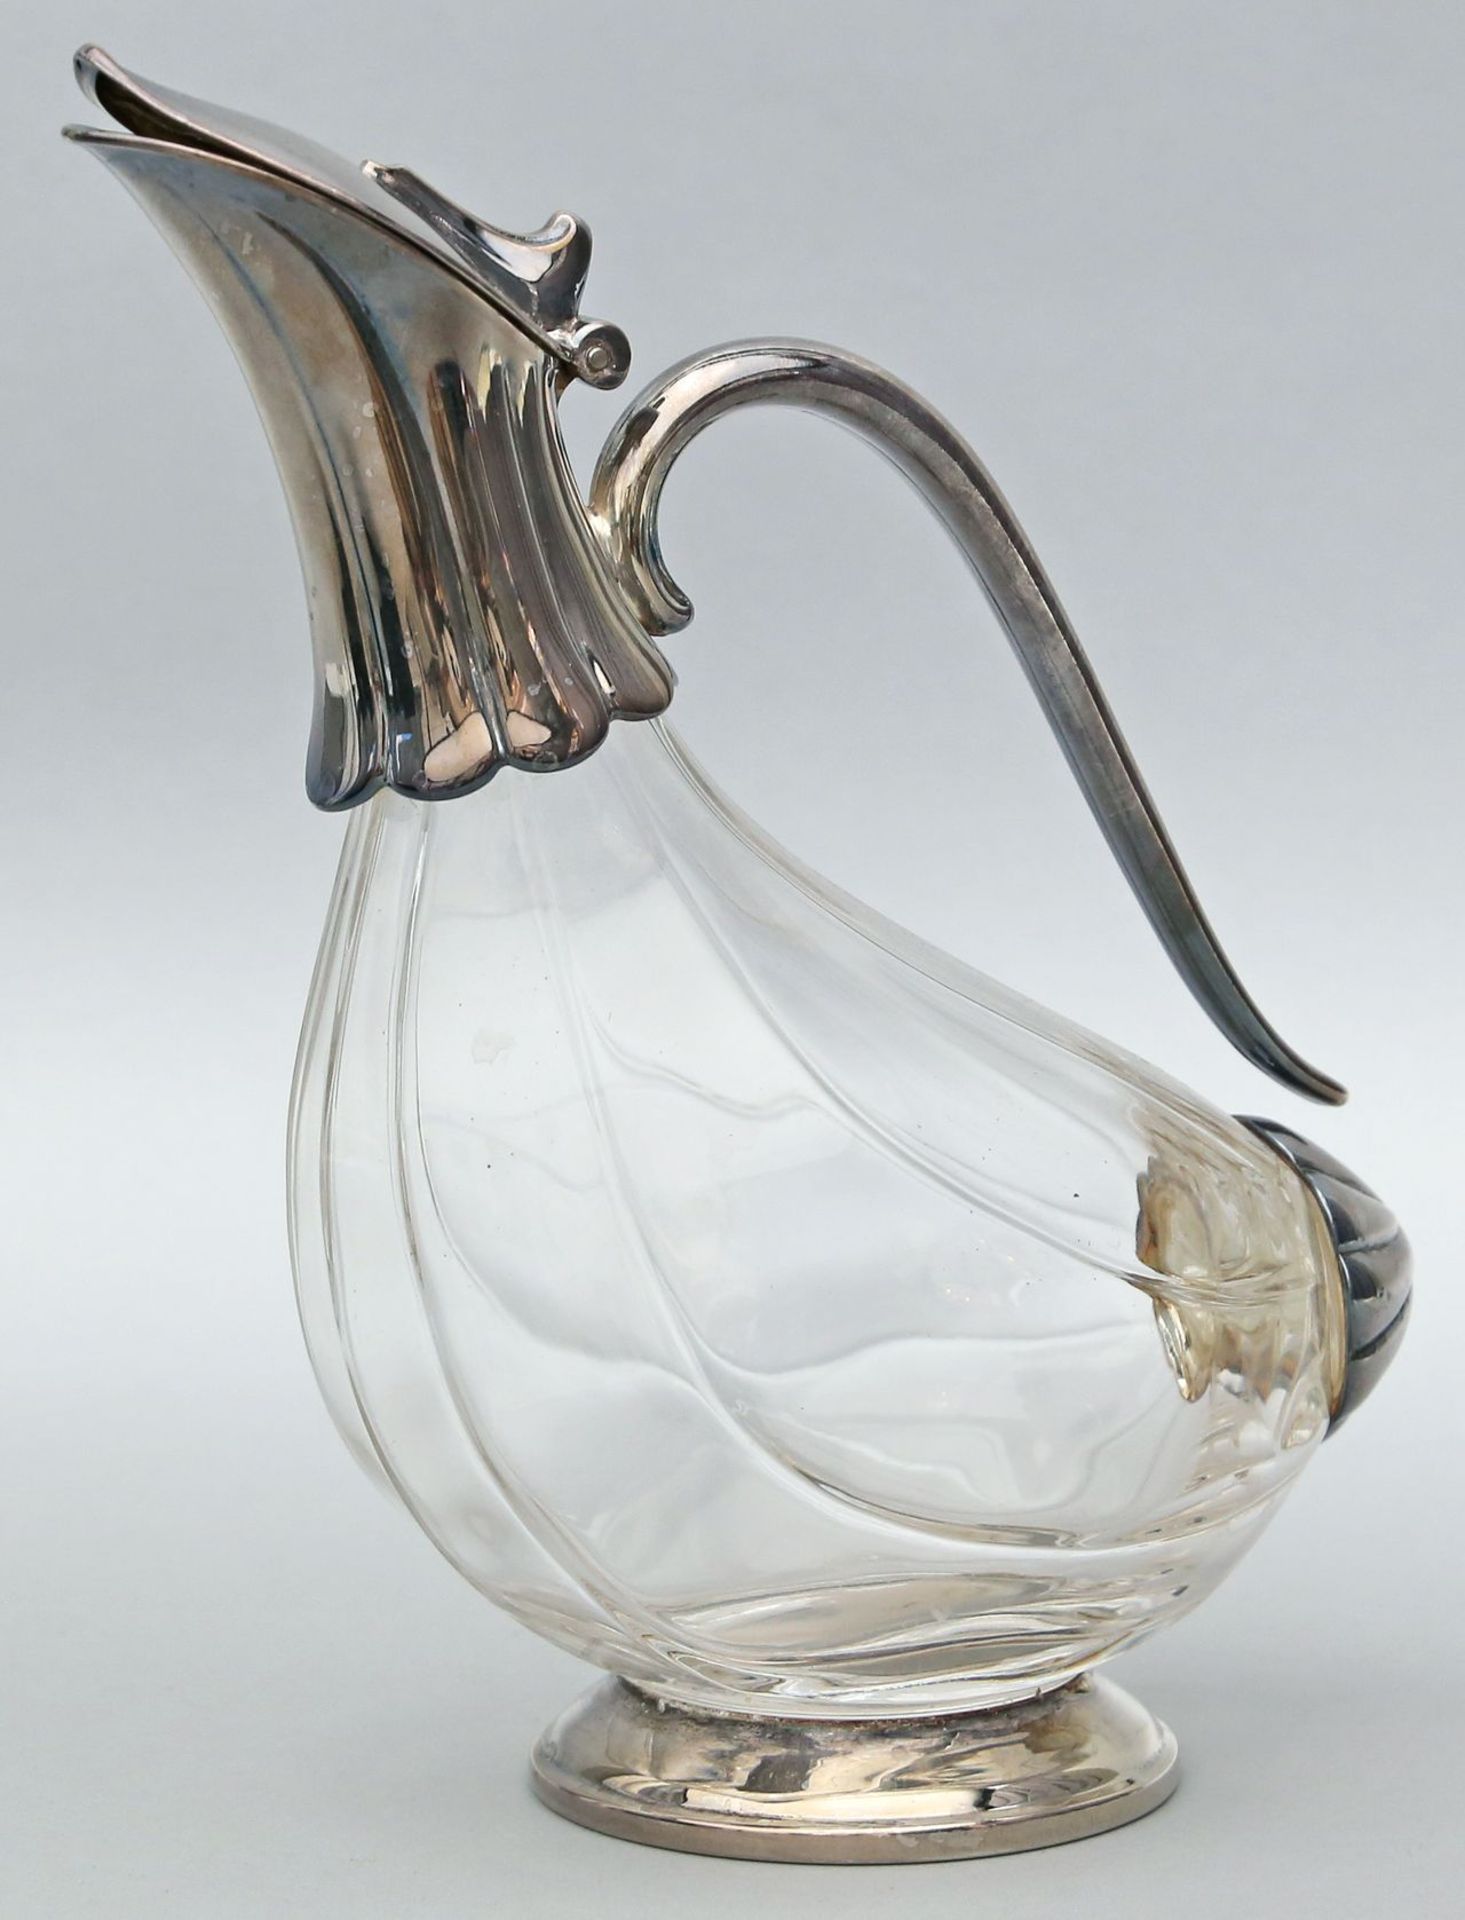 Karaffe in stilisierter Entenform. Farbloses Glas mit versilberter Metallmontage. 20. Jh. H. 25 cm.